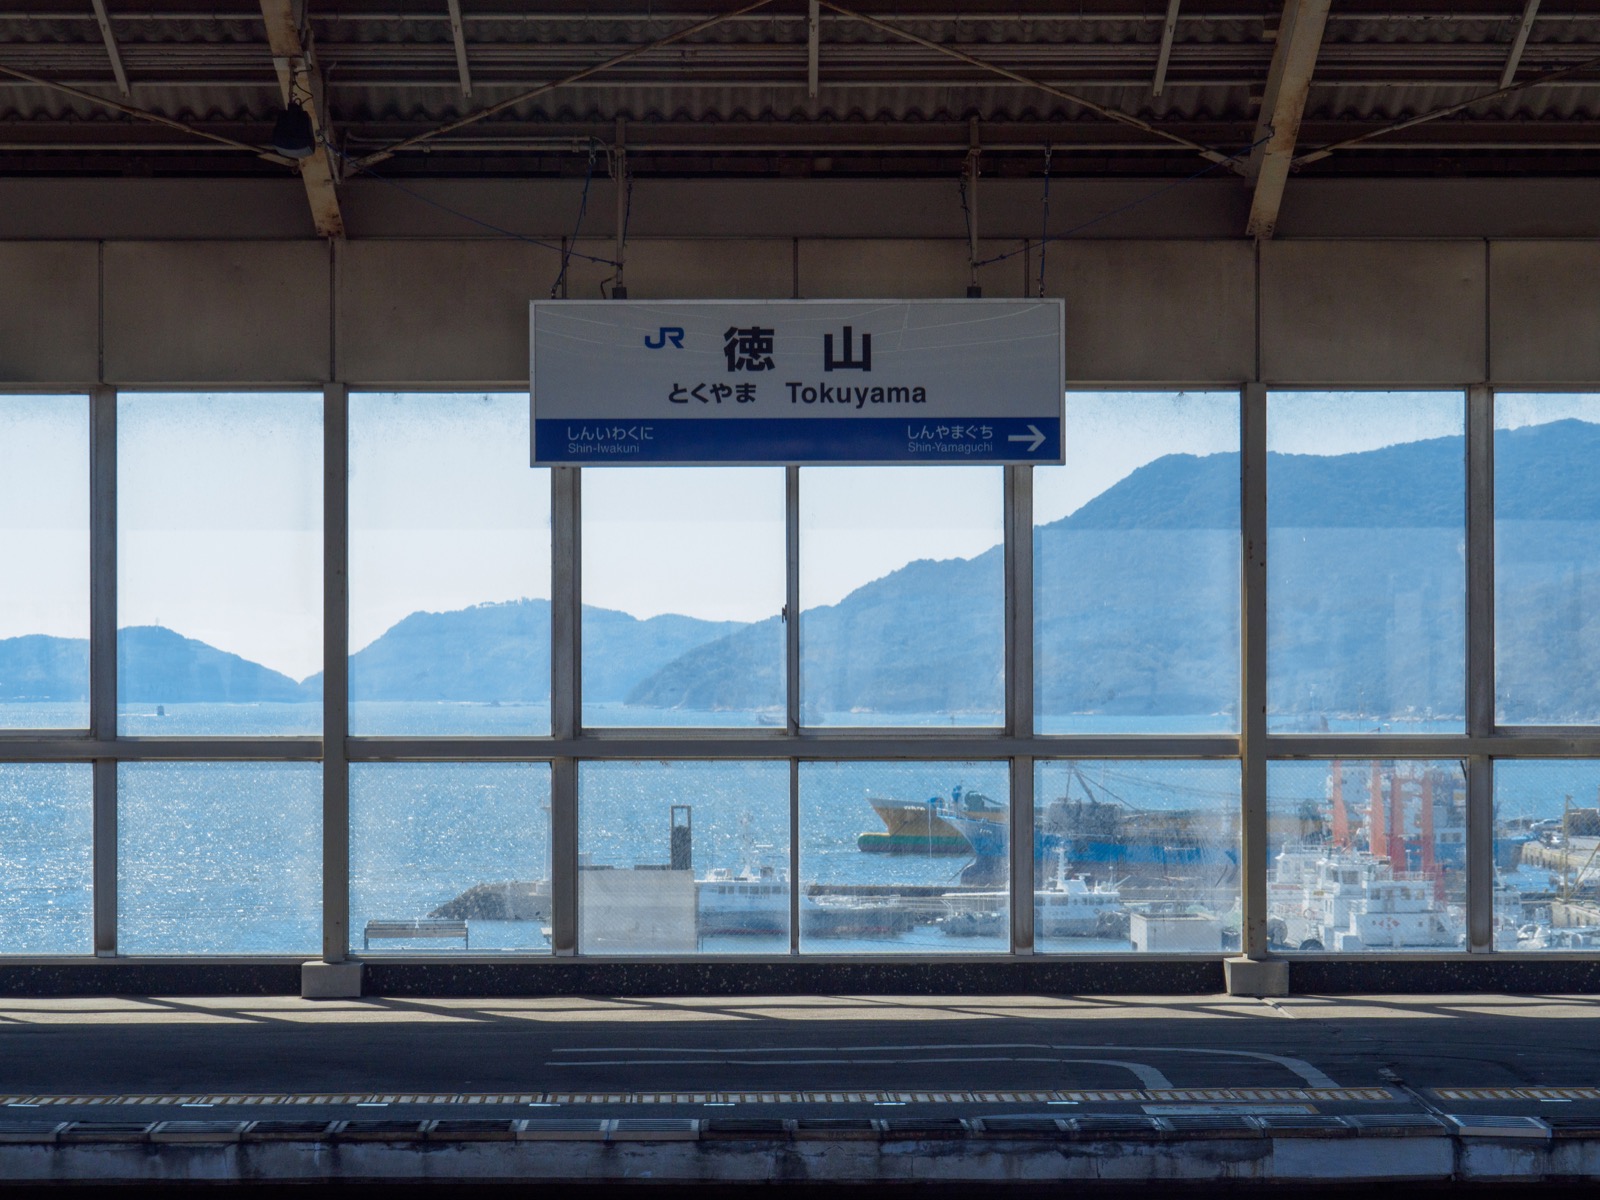 徳山駅の新幹線ホームから見た徳山下松港と瀬戸内海の島々